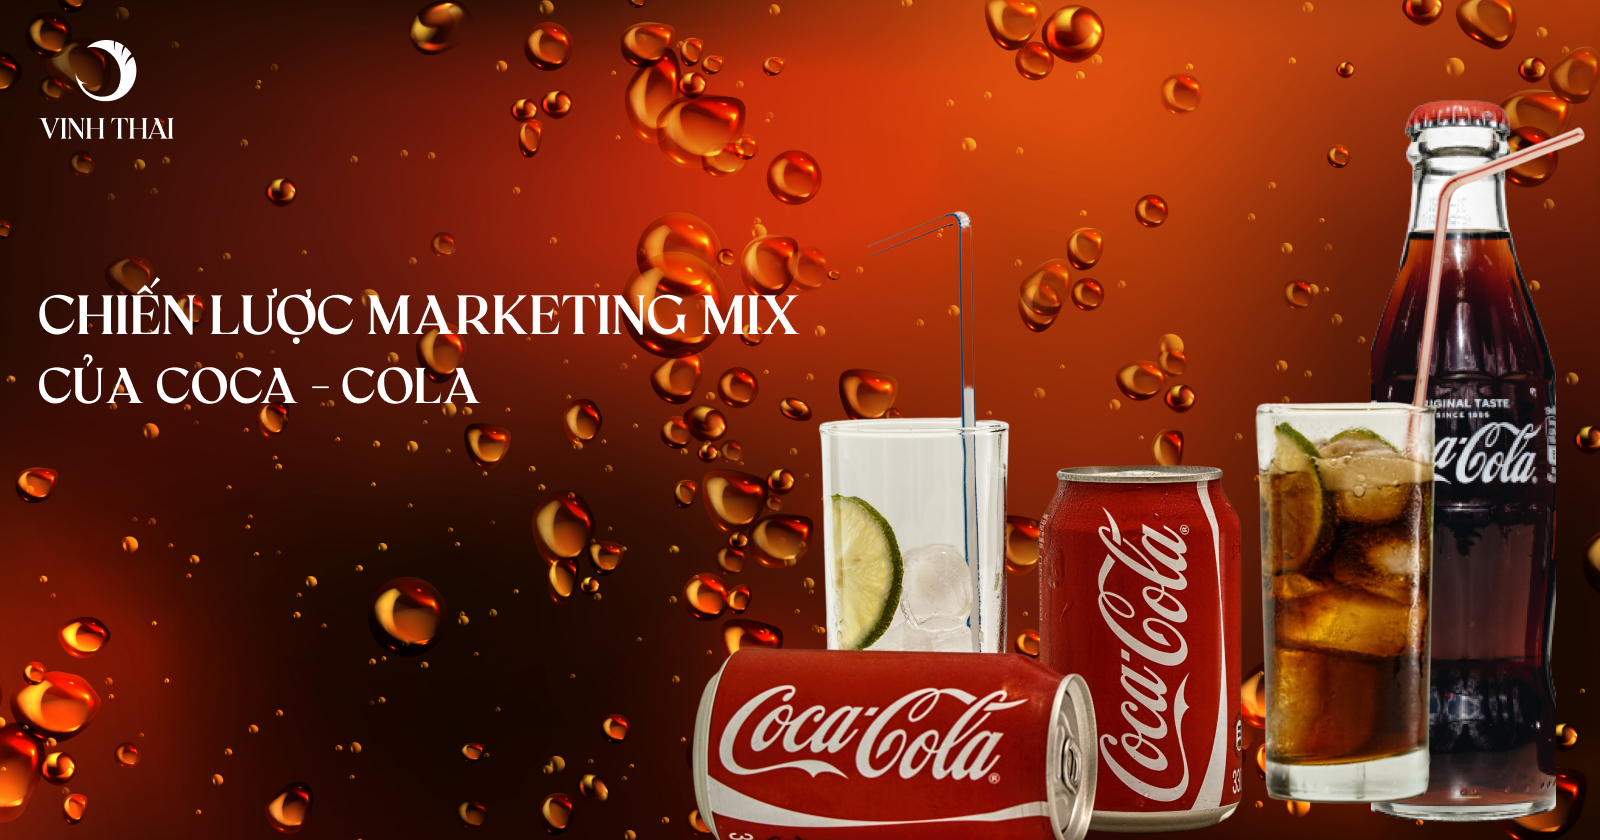 chien luoc marketing mix cua coca cola